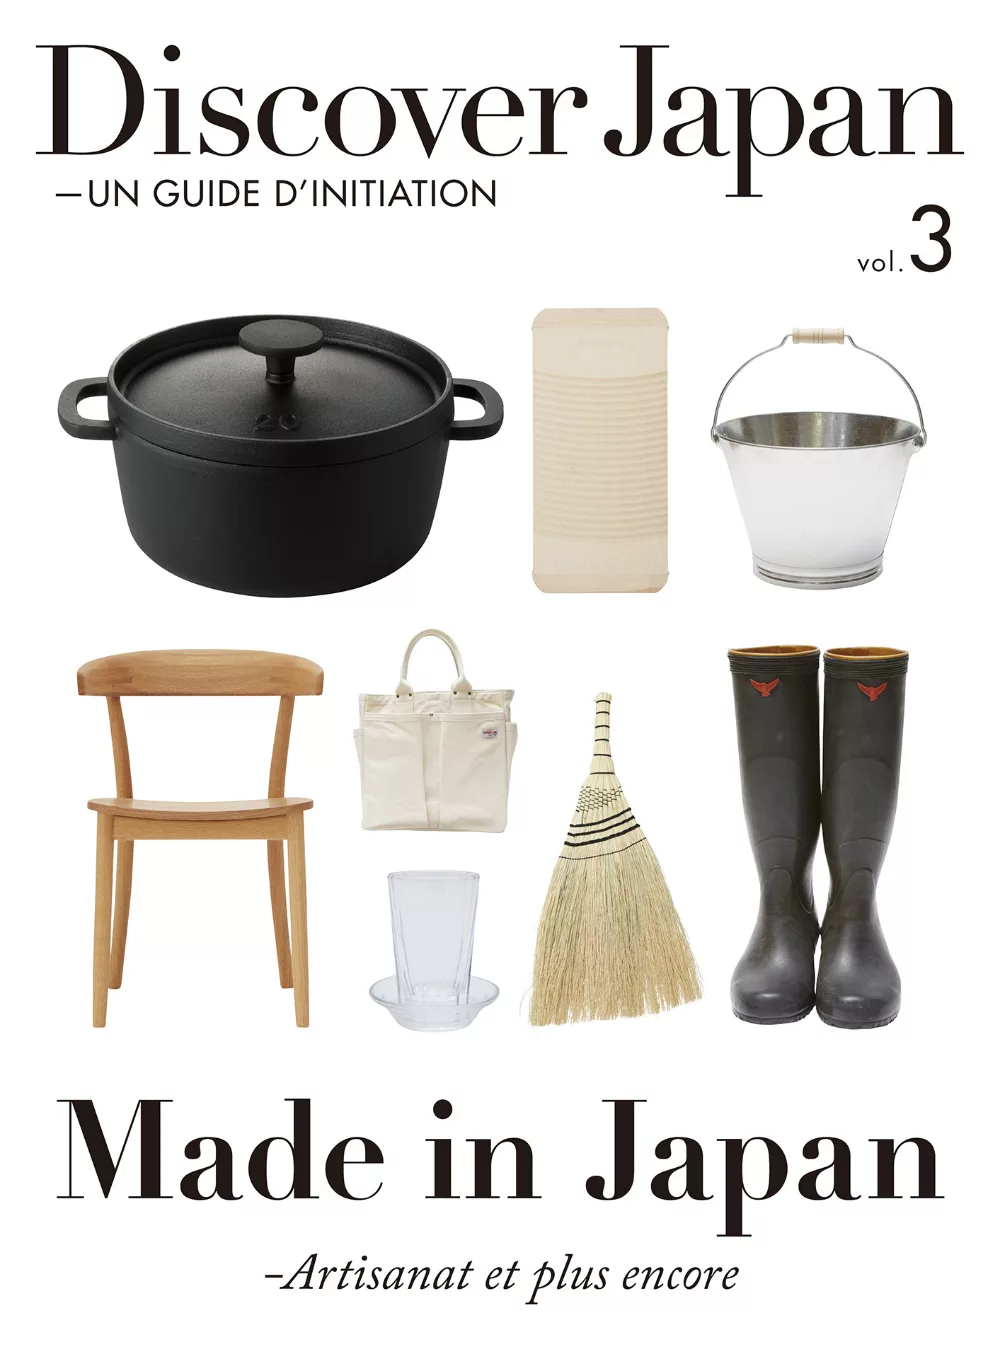 (歐美雜誌) Discover Japan - UN GUIDE D’INITIATION 2015第3期 (電子雜誌)